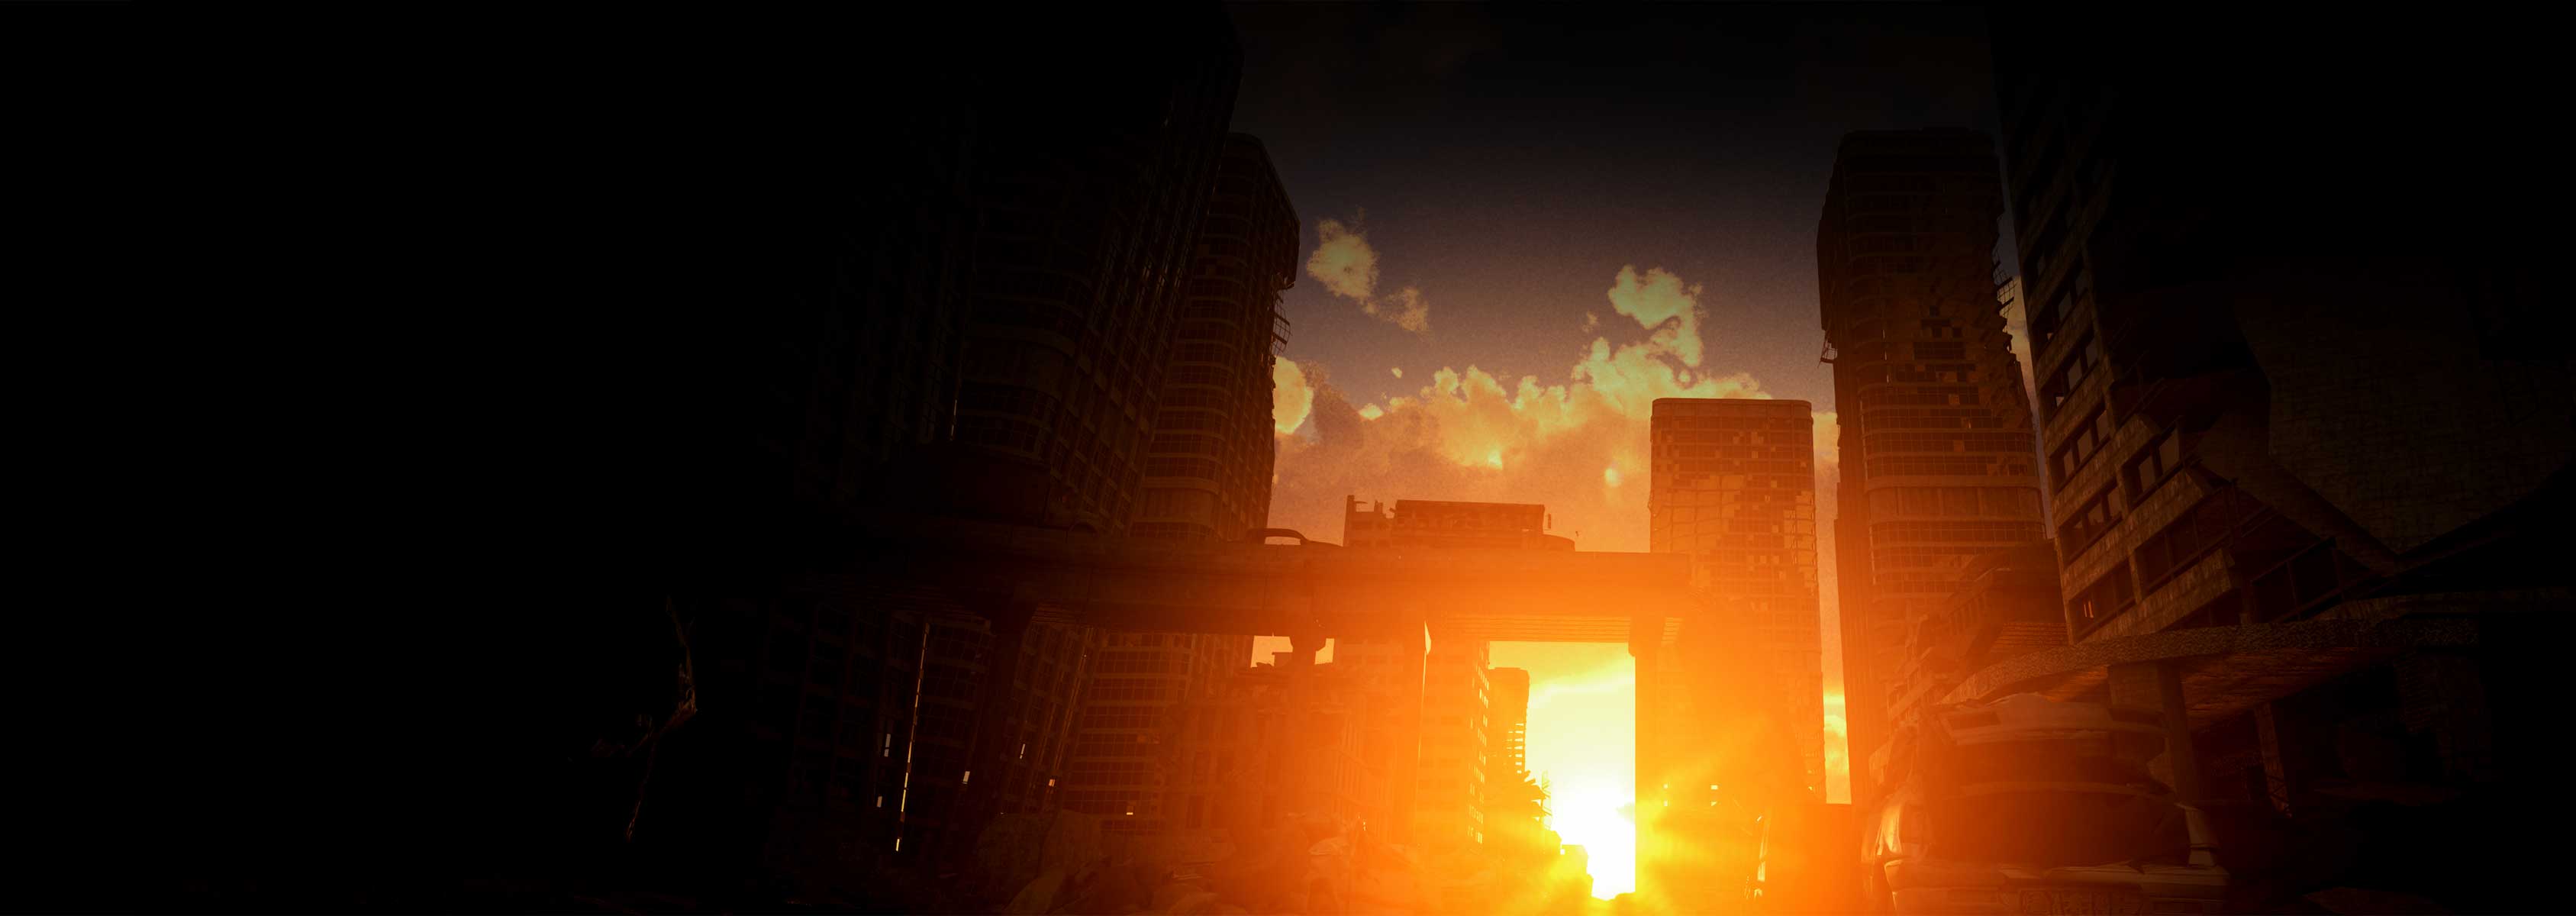 A sun rising over a city.